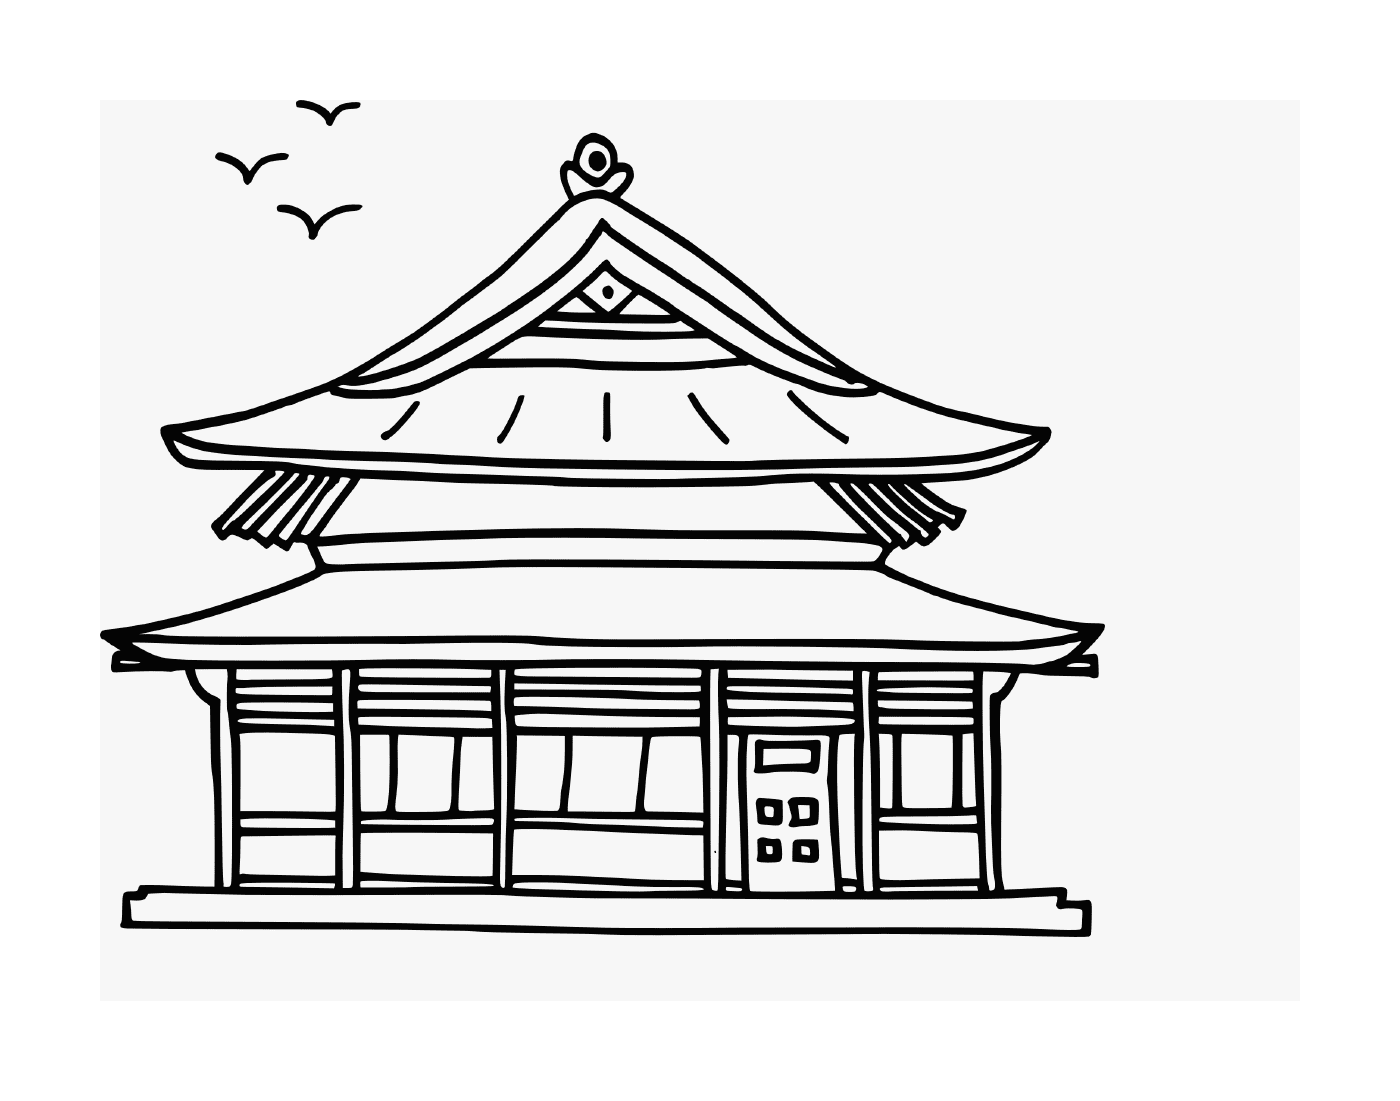 maison asiatique chinoise traditionnelle